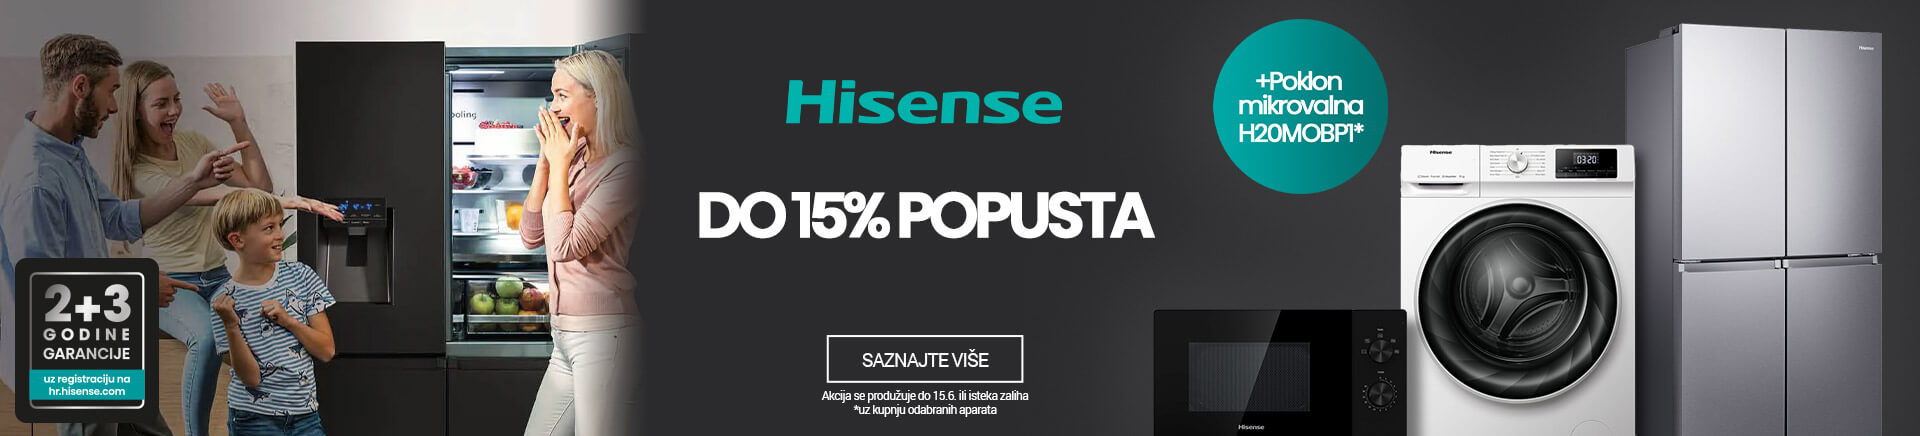 HR Hisense popust do 10% MOBILE 380 X 436.jpg